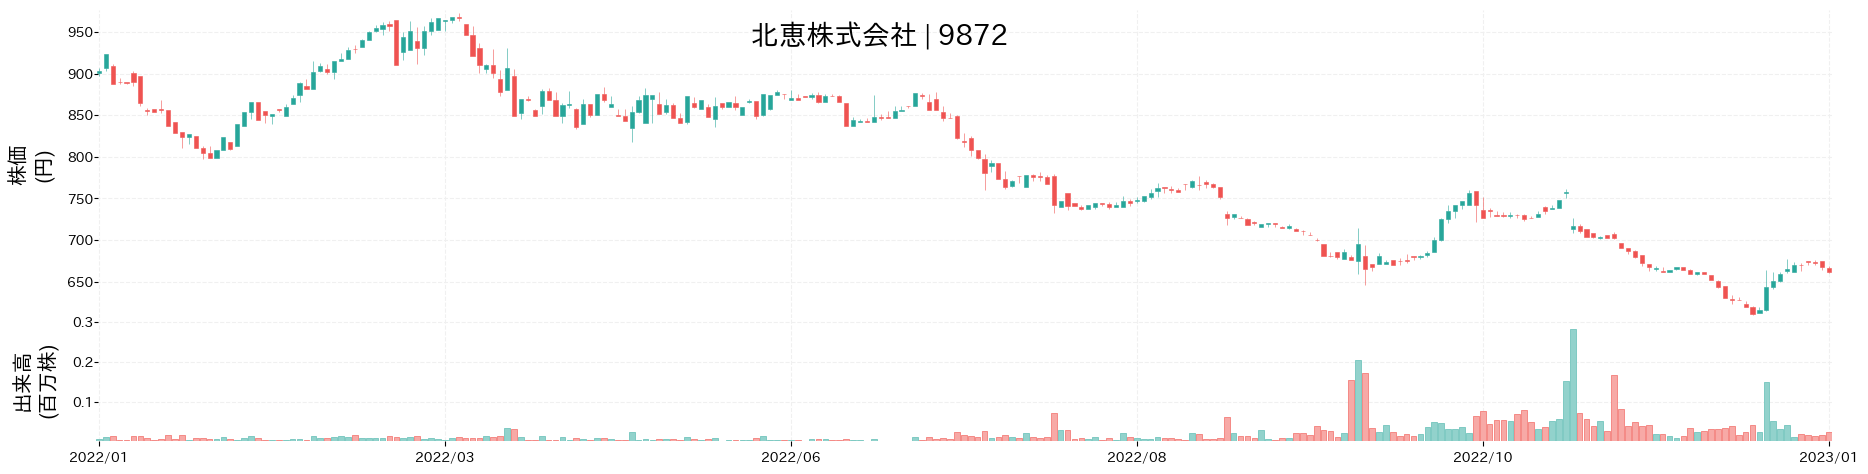 北恵の株価推移(2022)